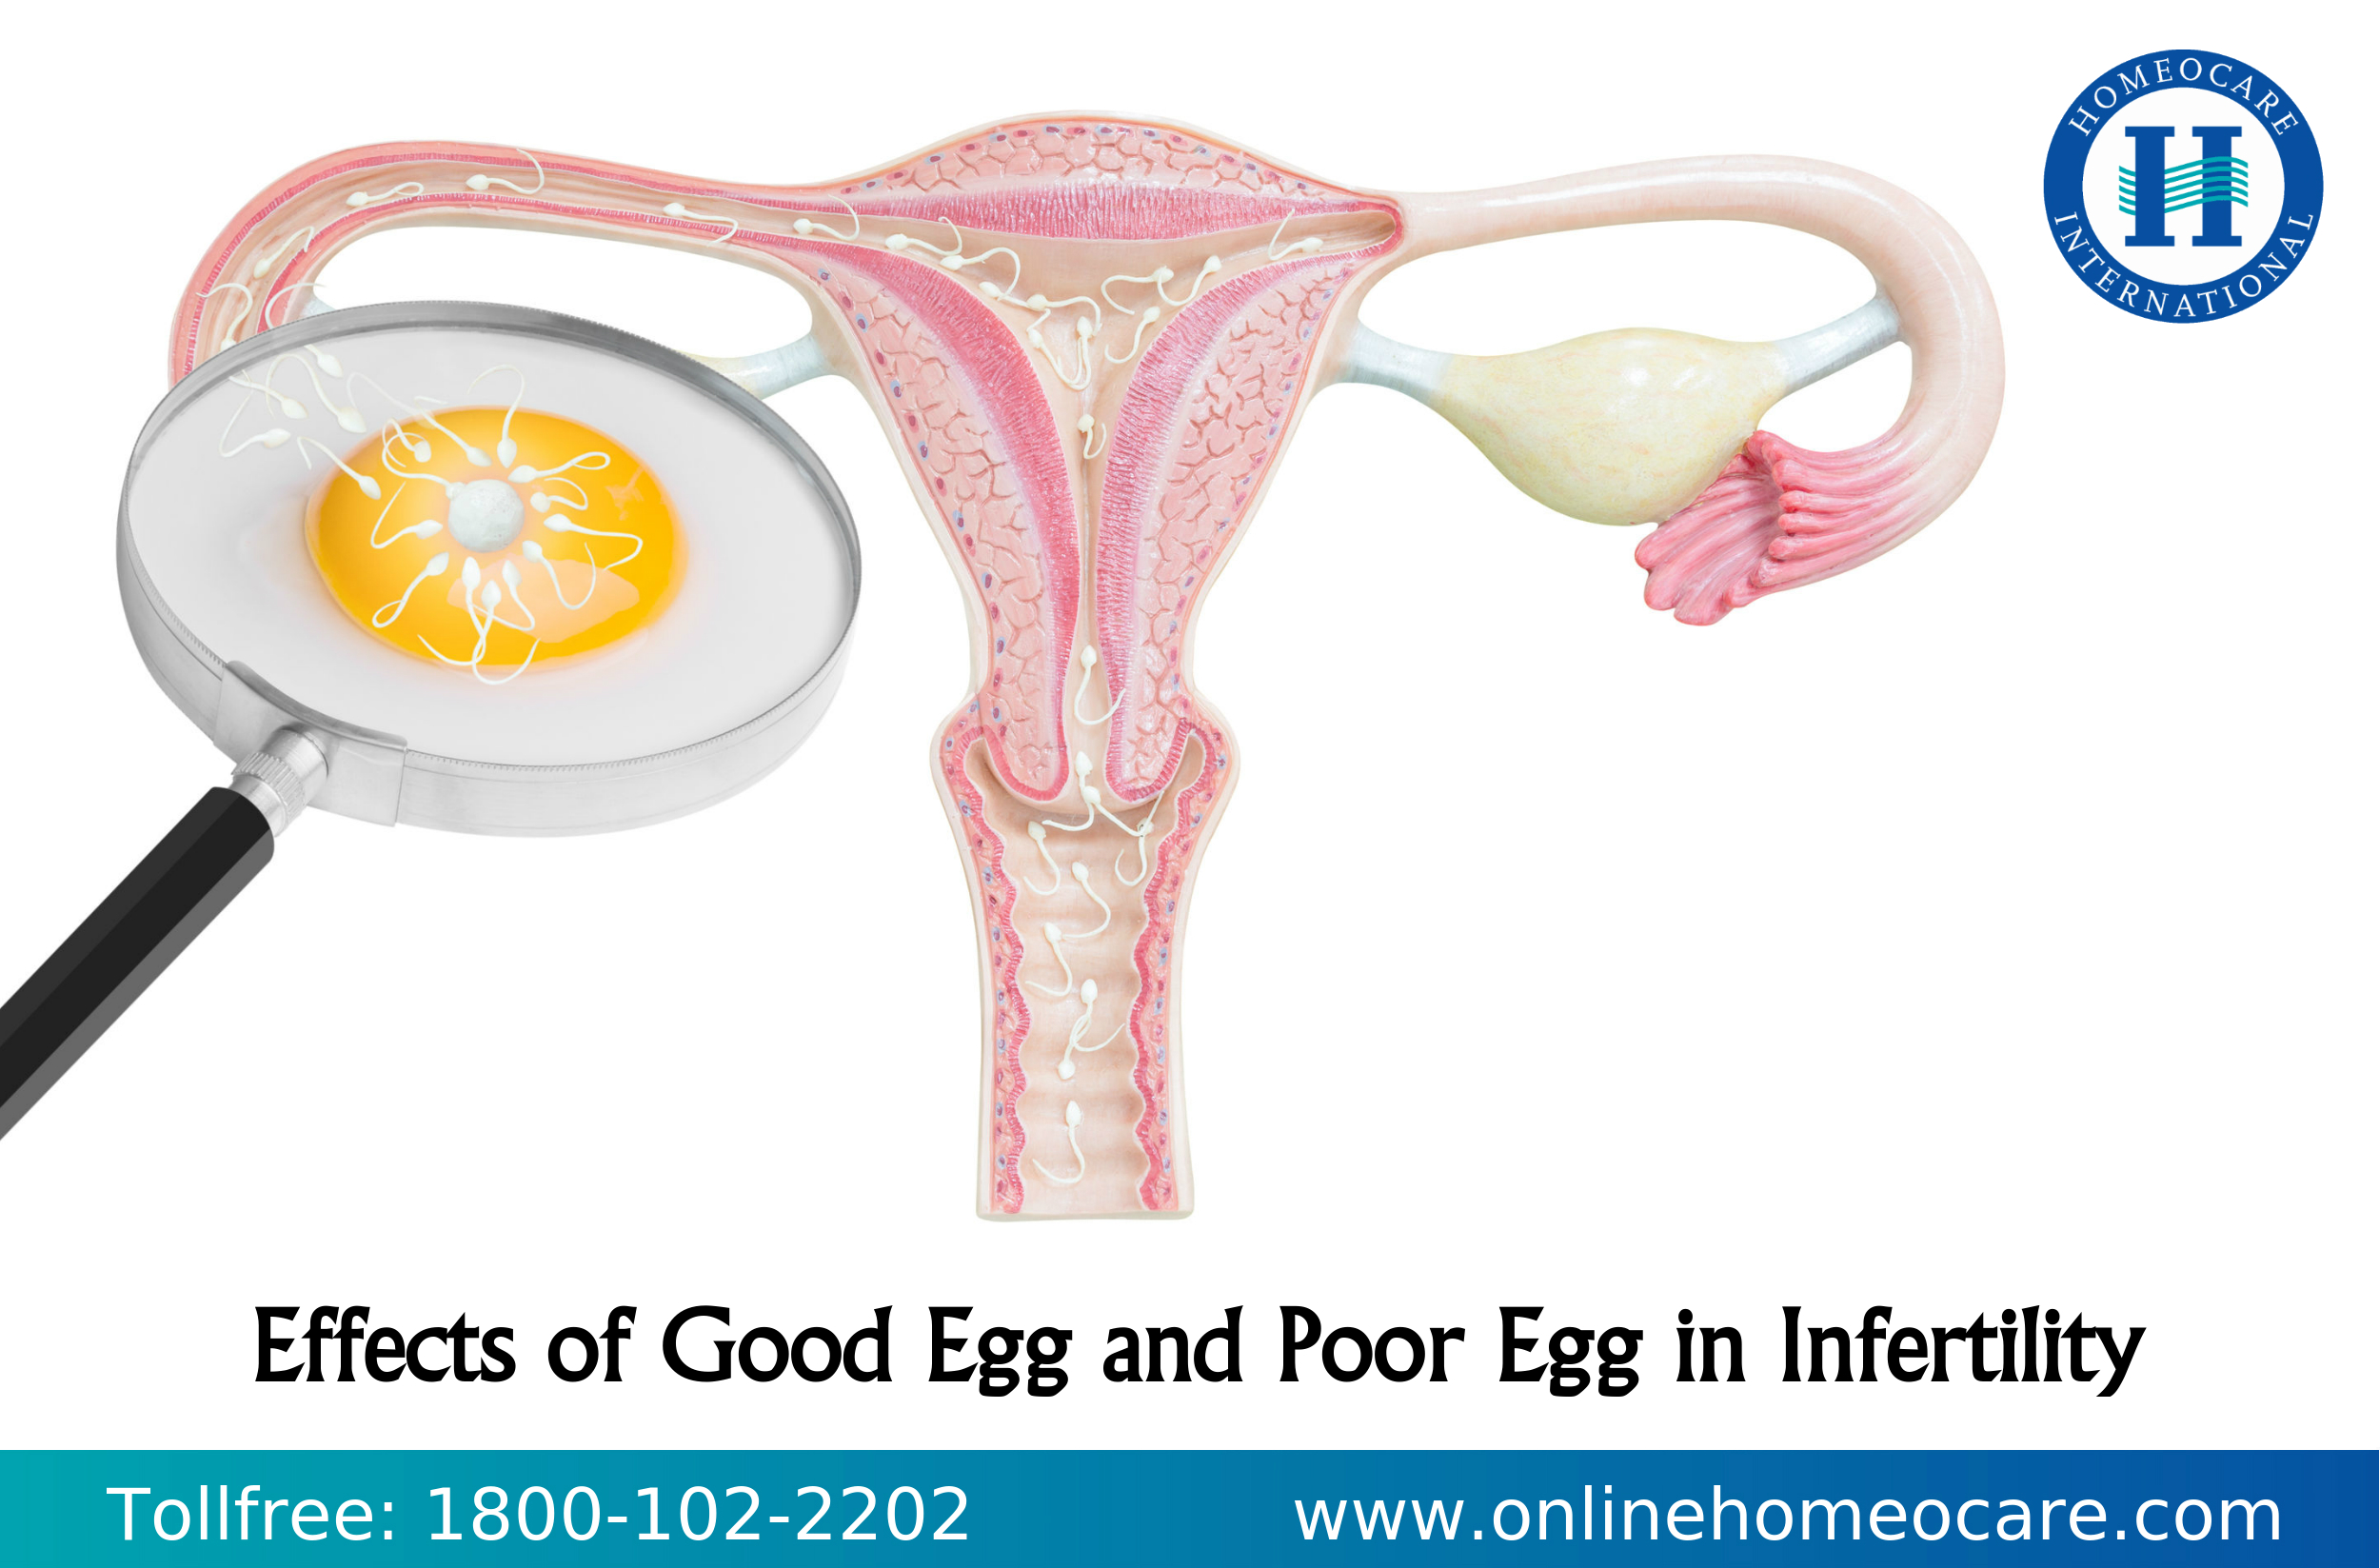 Poor egg in infertility